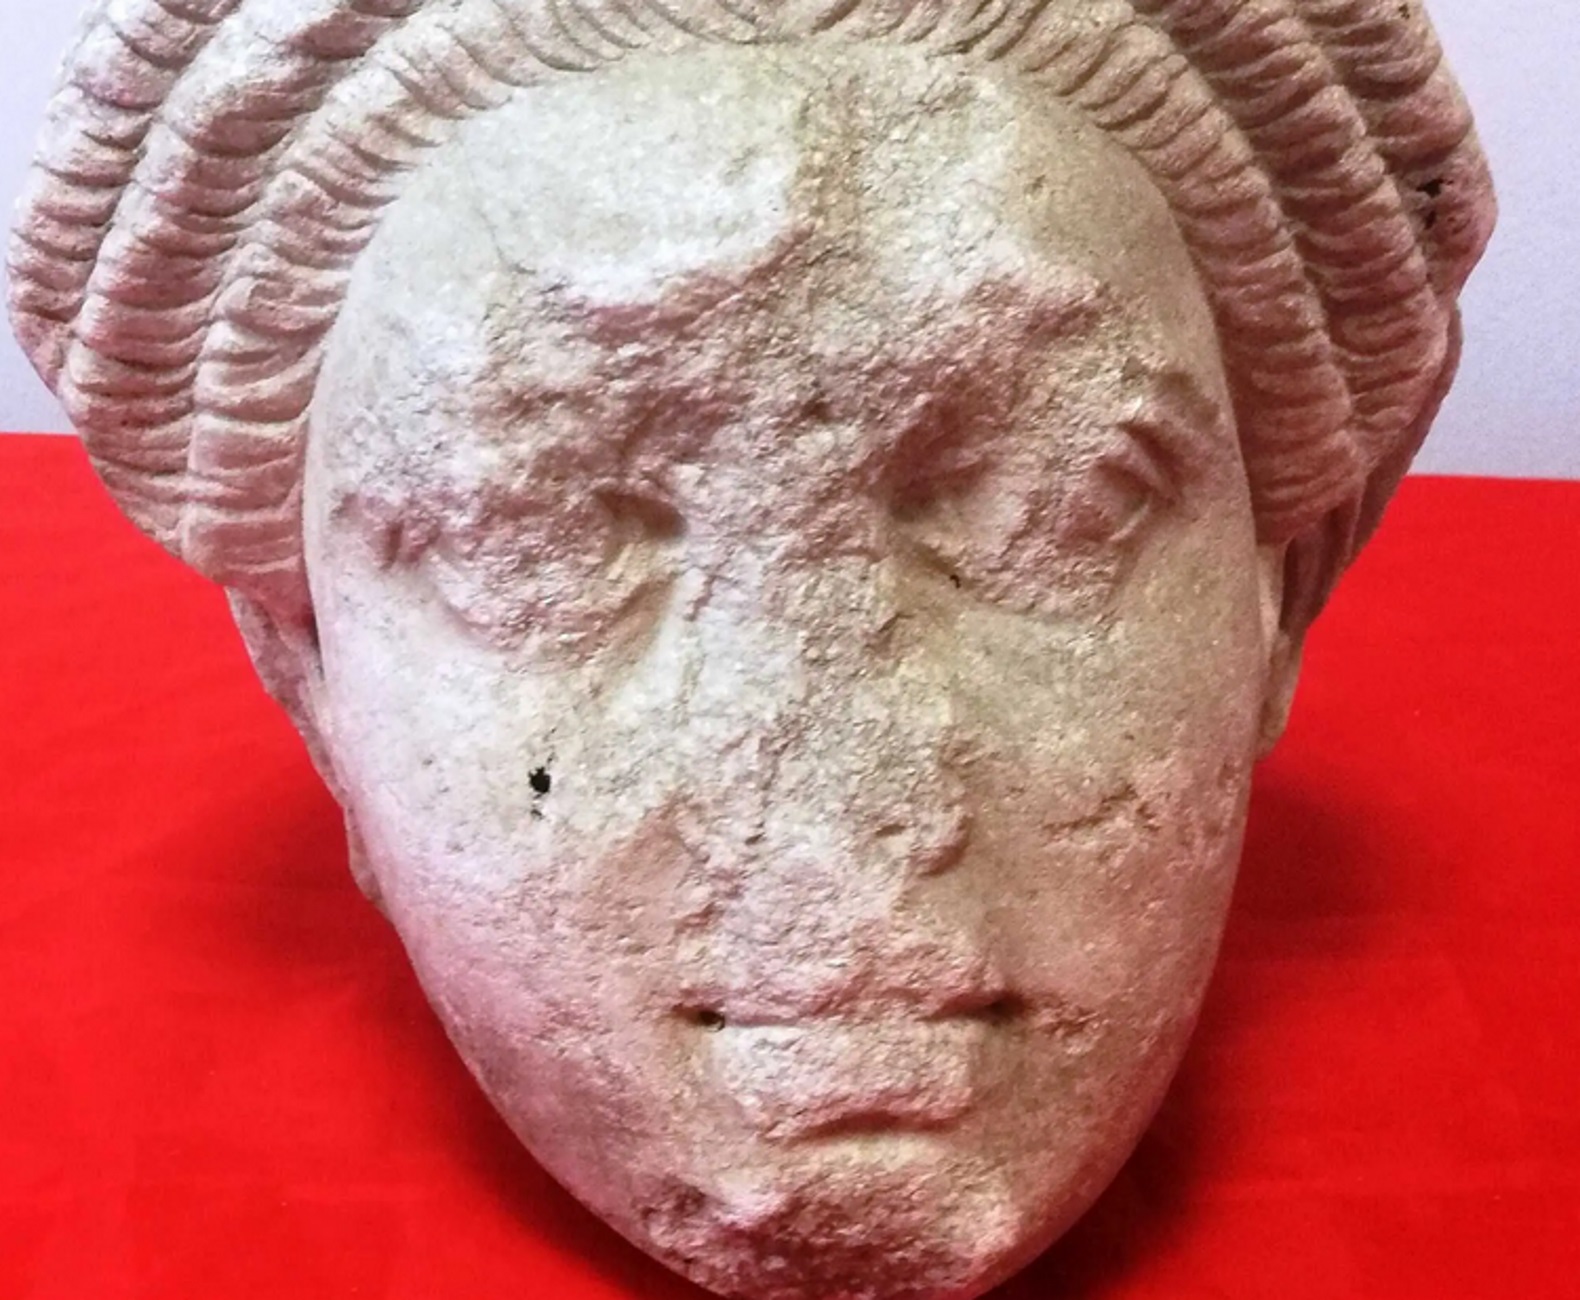 Θεσσαλονίκη: Πέθανε και βρέθηκε στο σπίτι που έμενε αυτό το άγαλμα με το μαρμάρινο κεφάλι γυναίκας